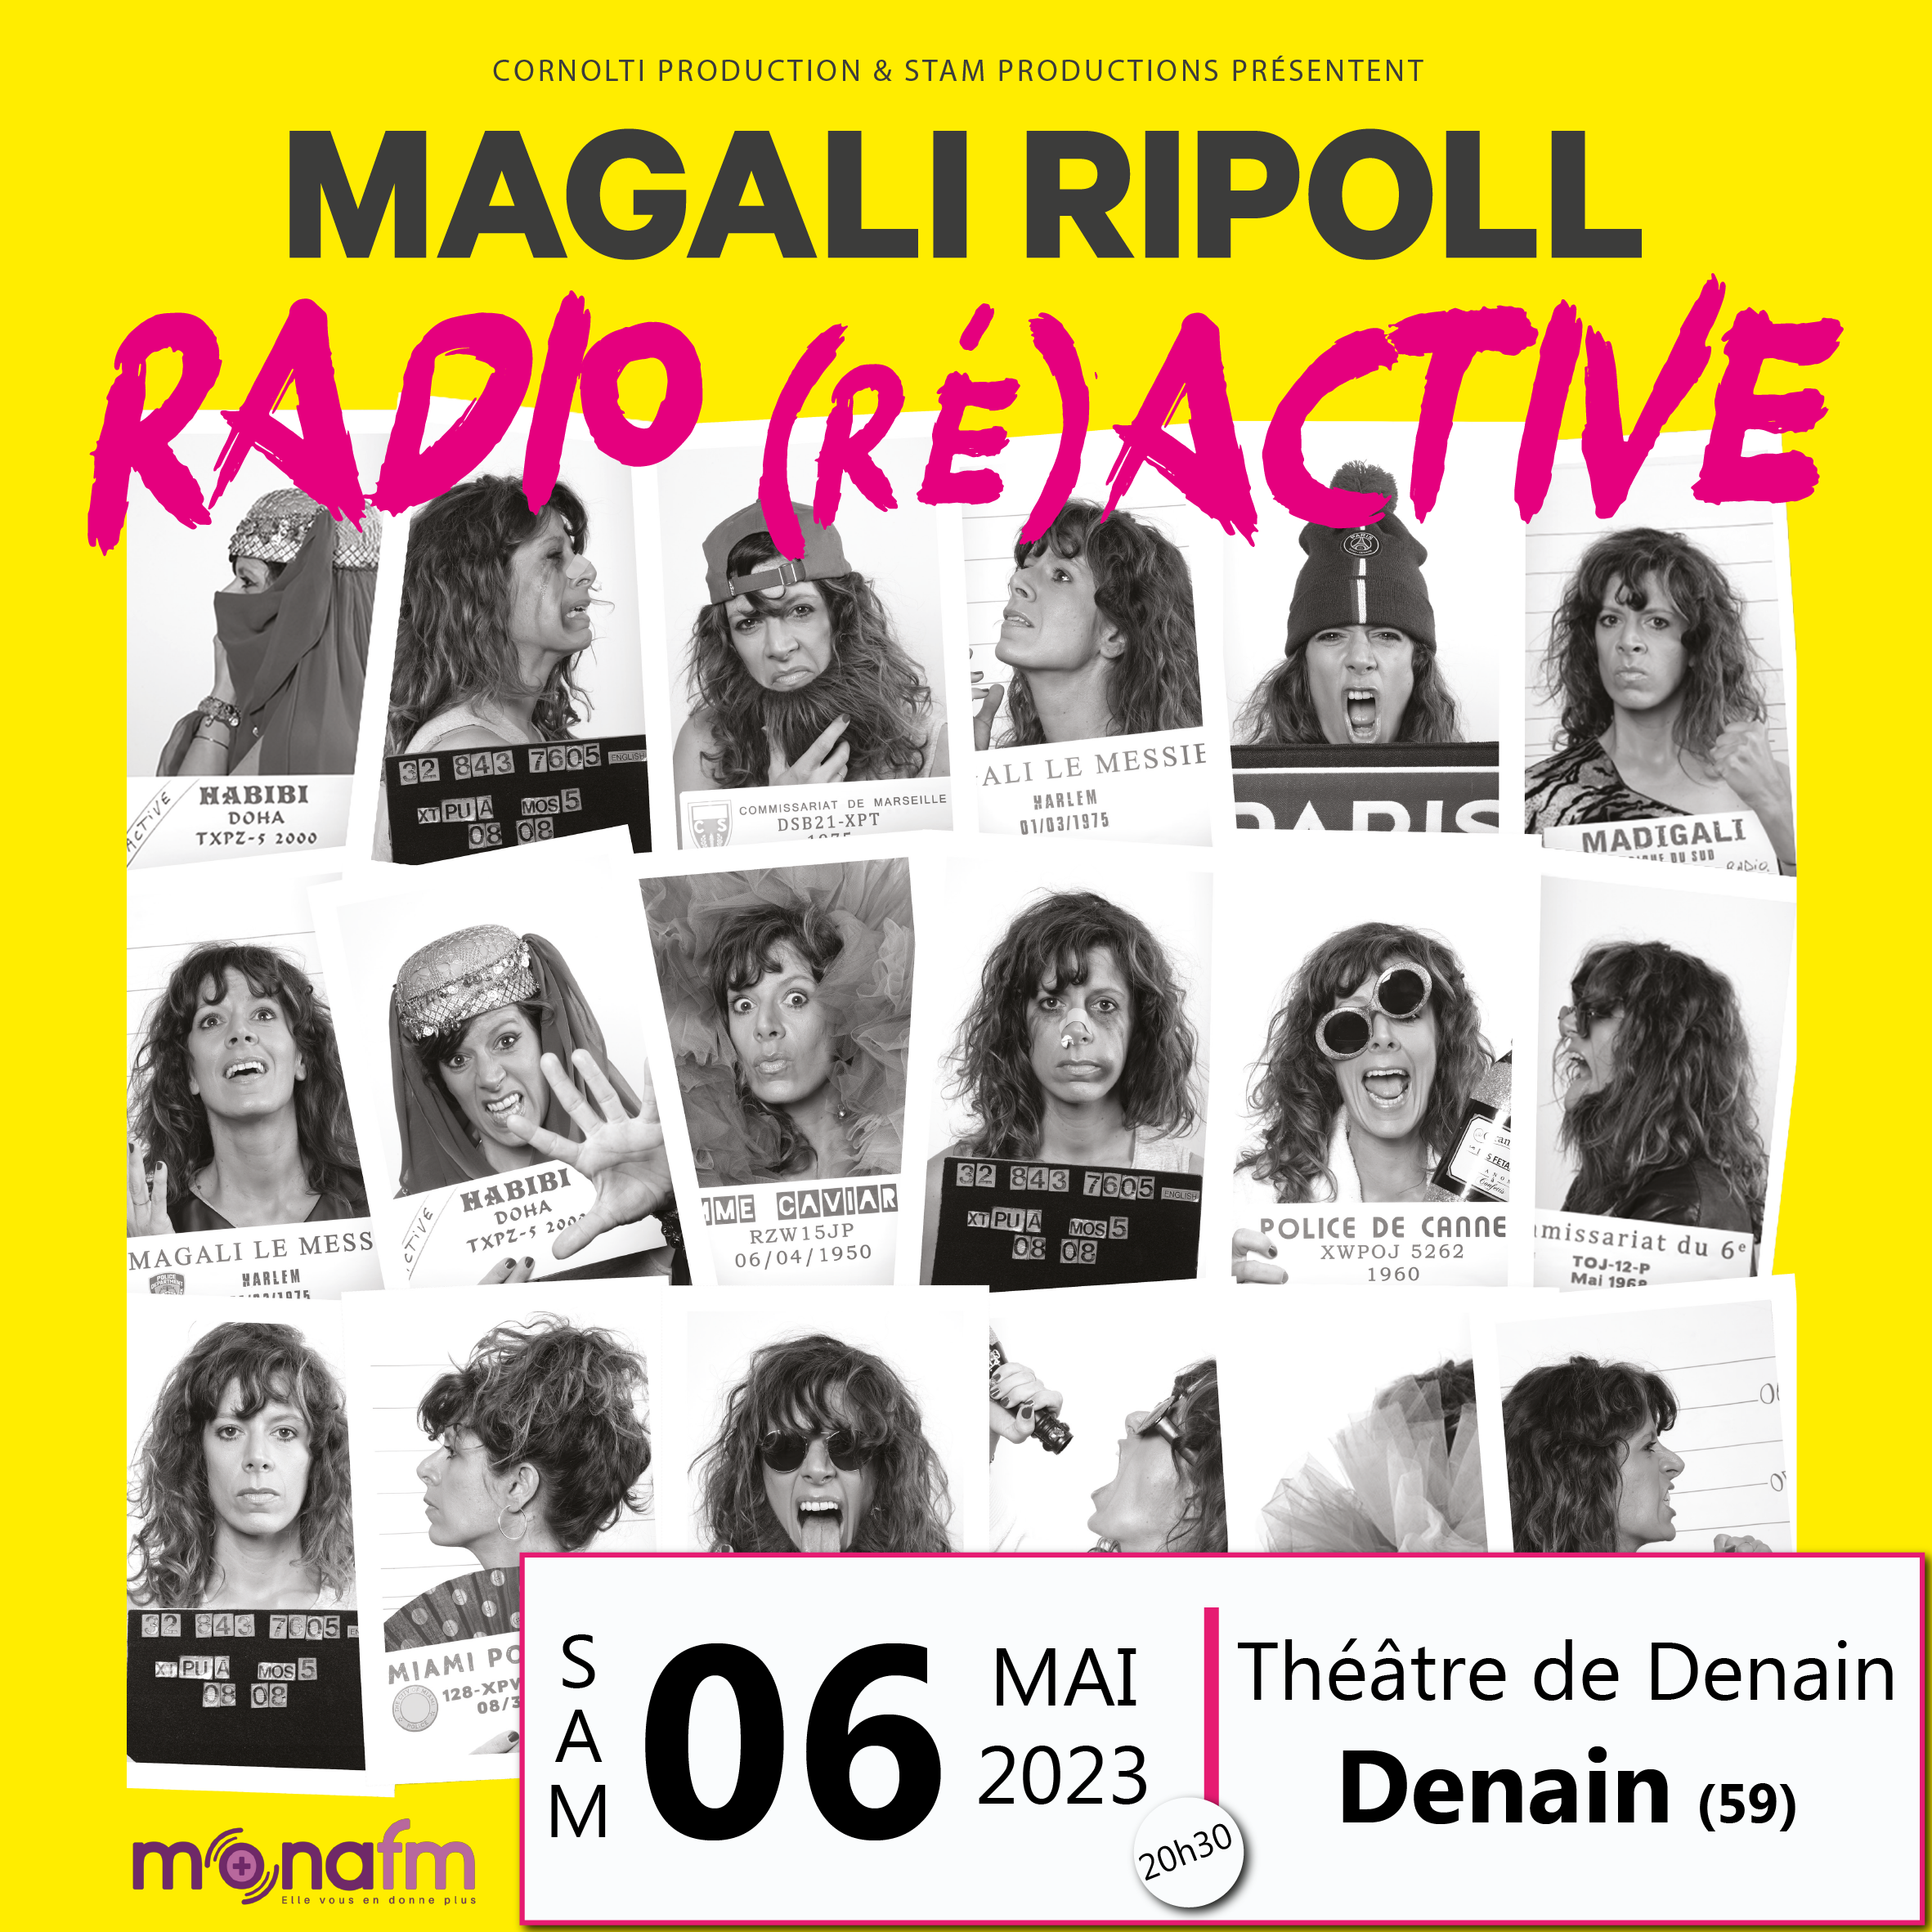 2023-05-06 Denain - Magali Ripoll (post).png (3.48 MB)